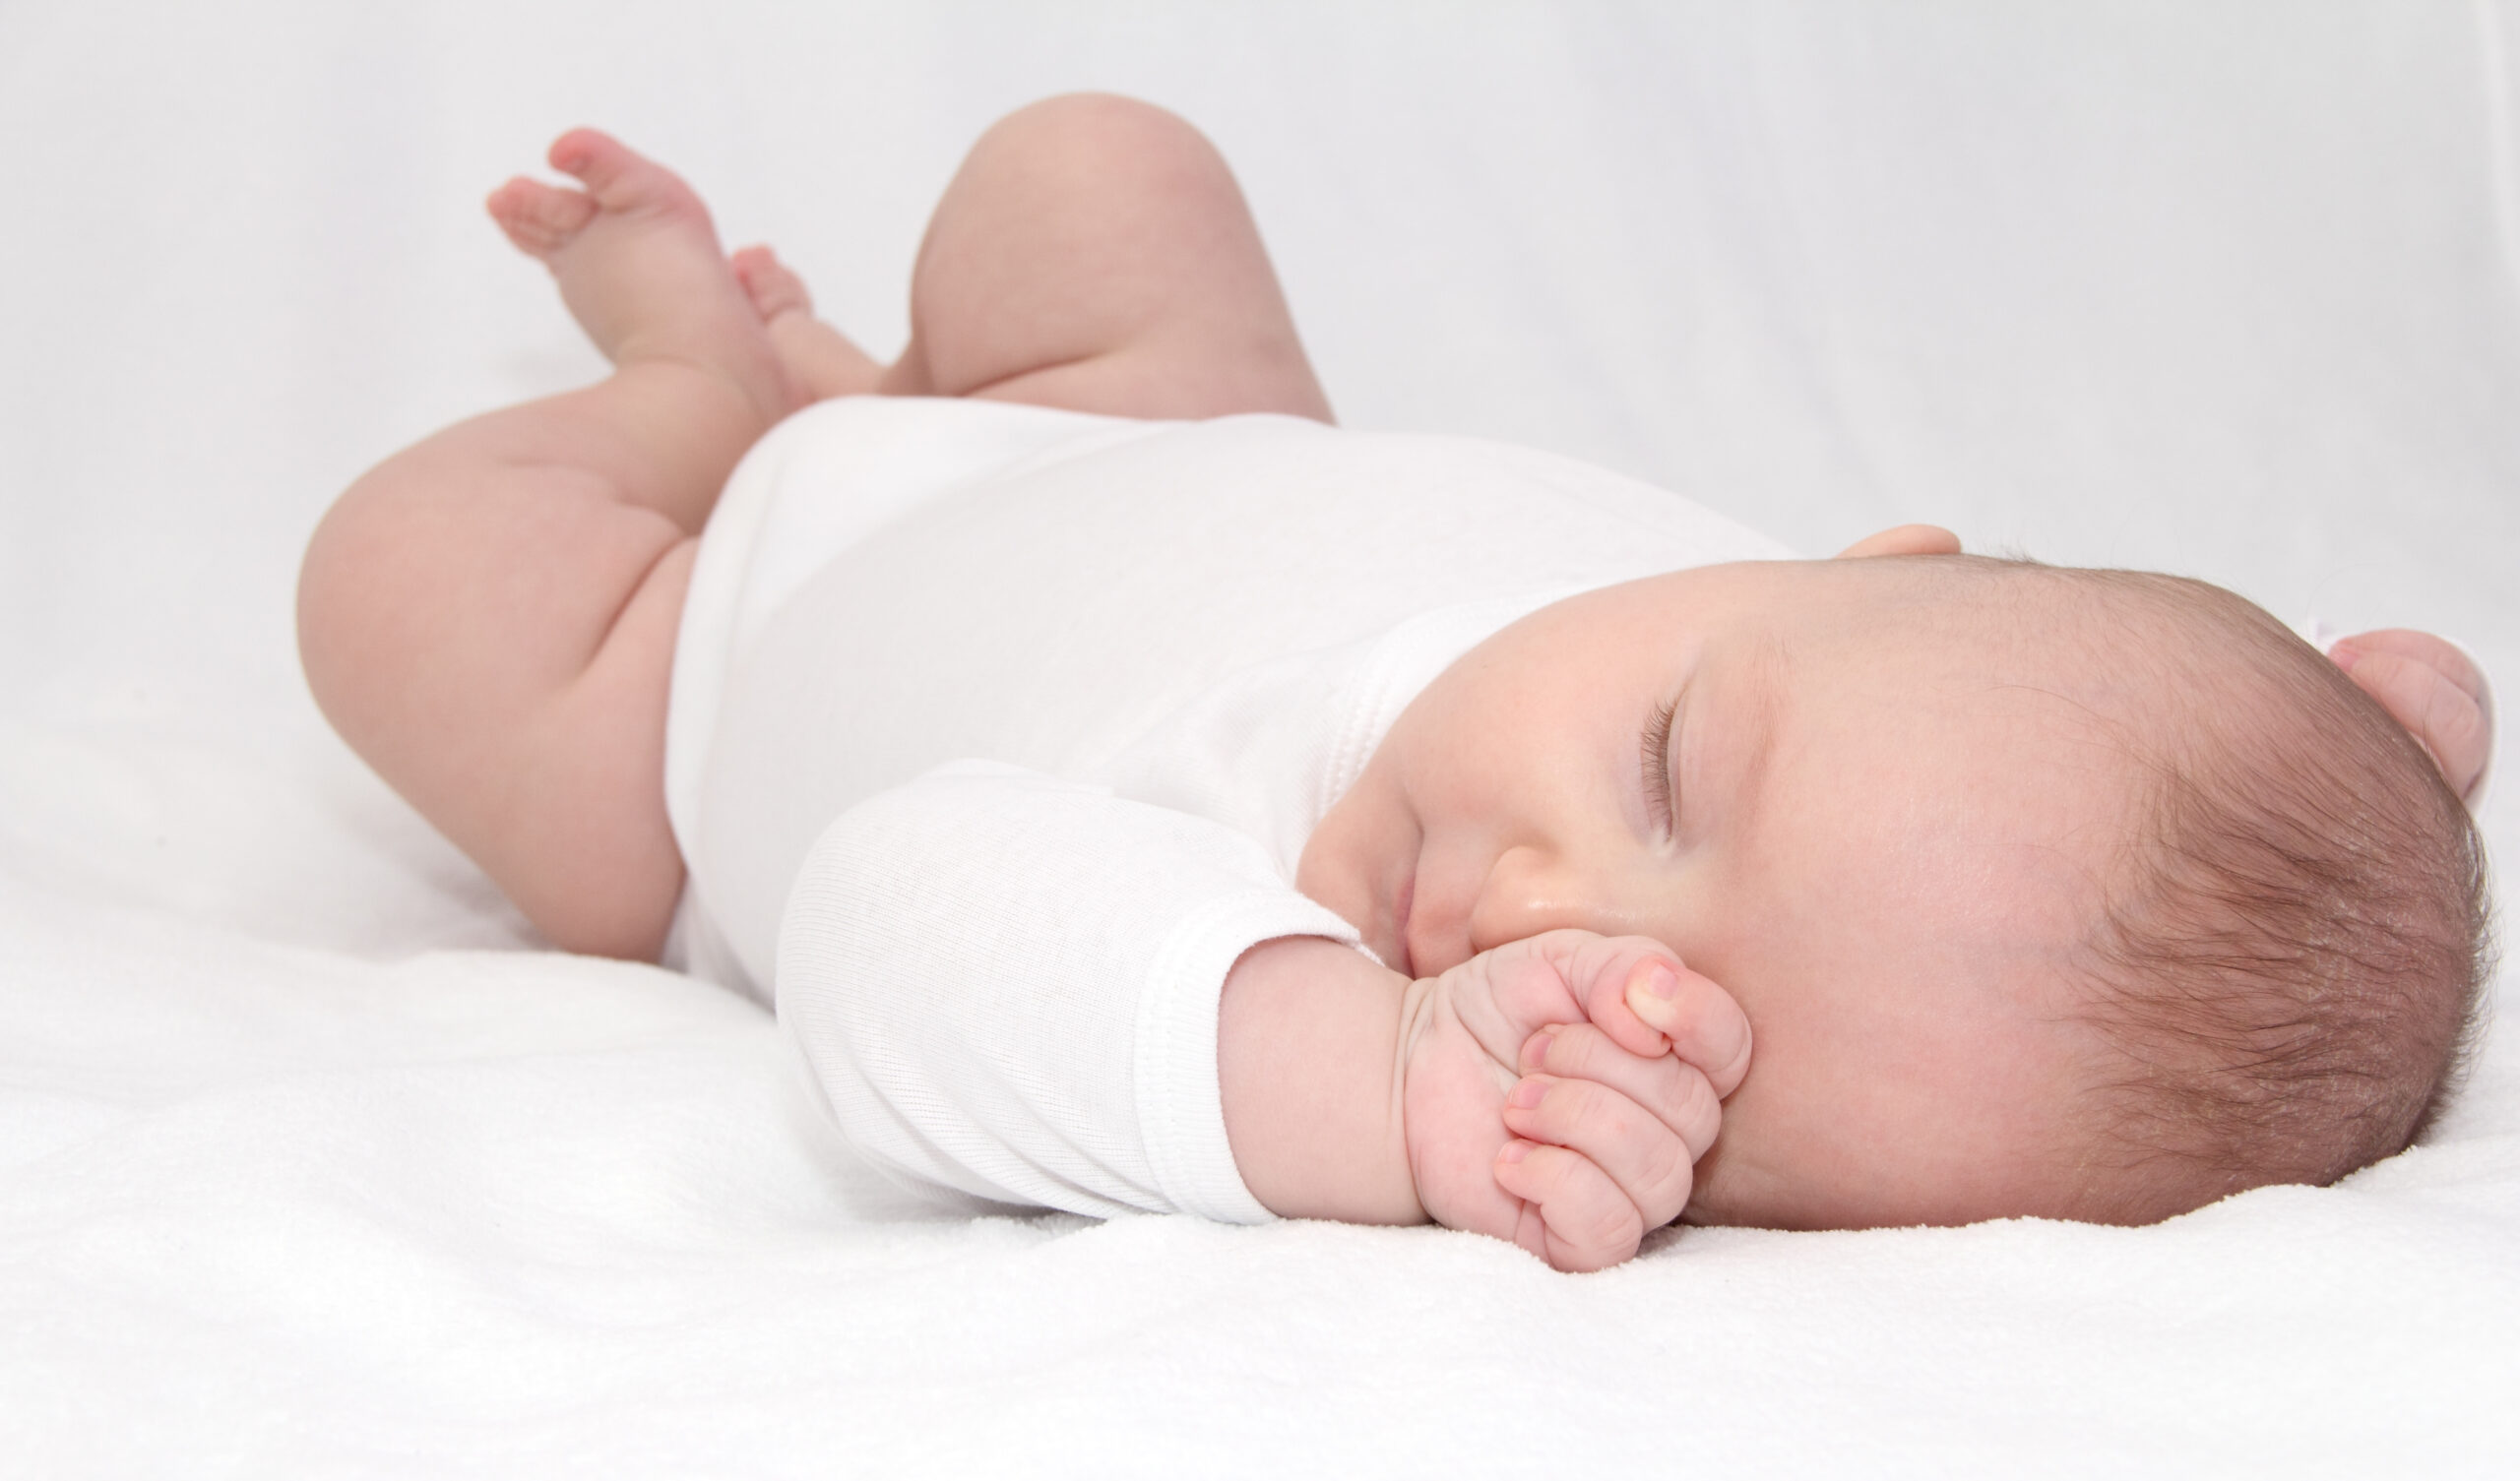 i 4 miti da sfatare sul sonno dei bambini a nanna con monica consulente pediatrica sleep sense